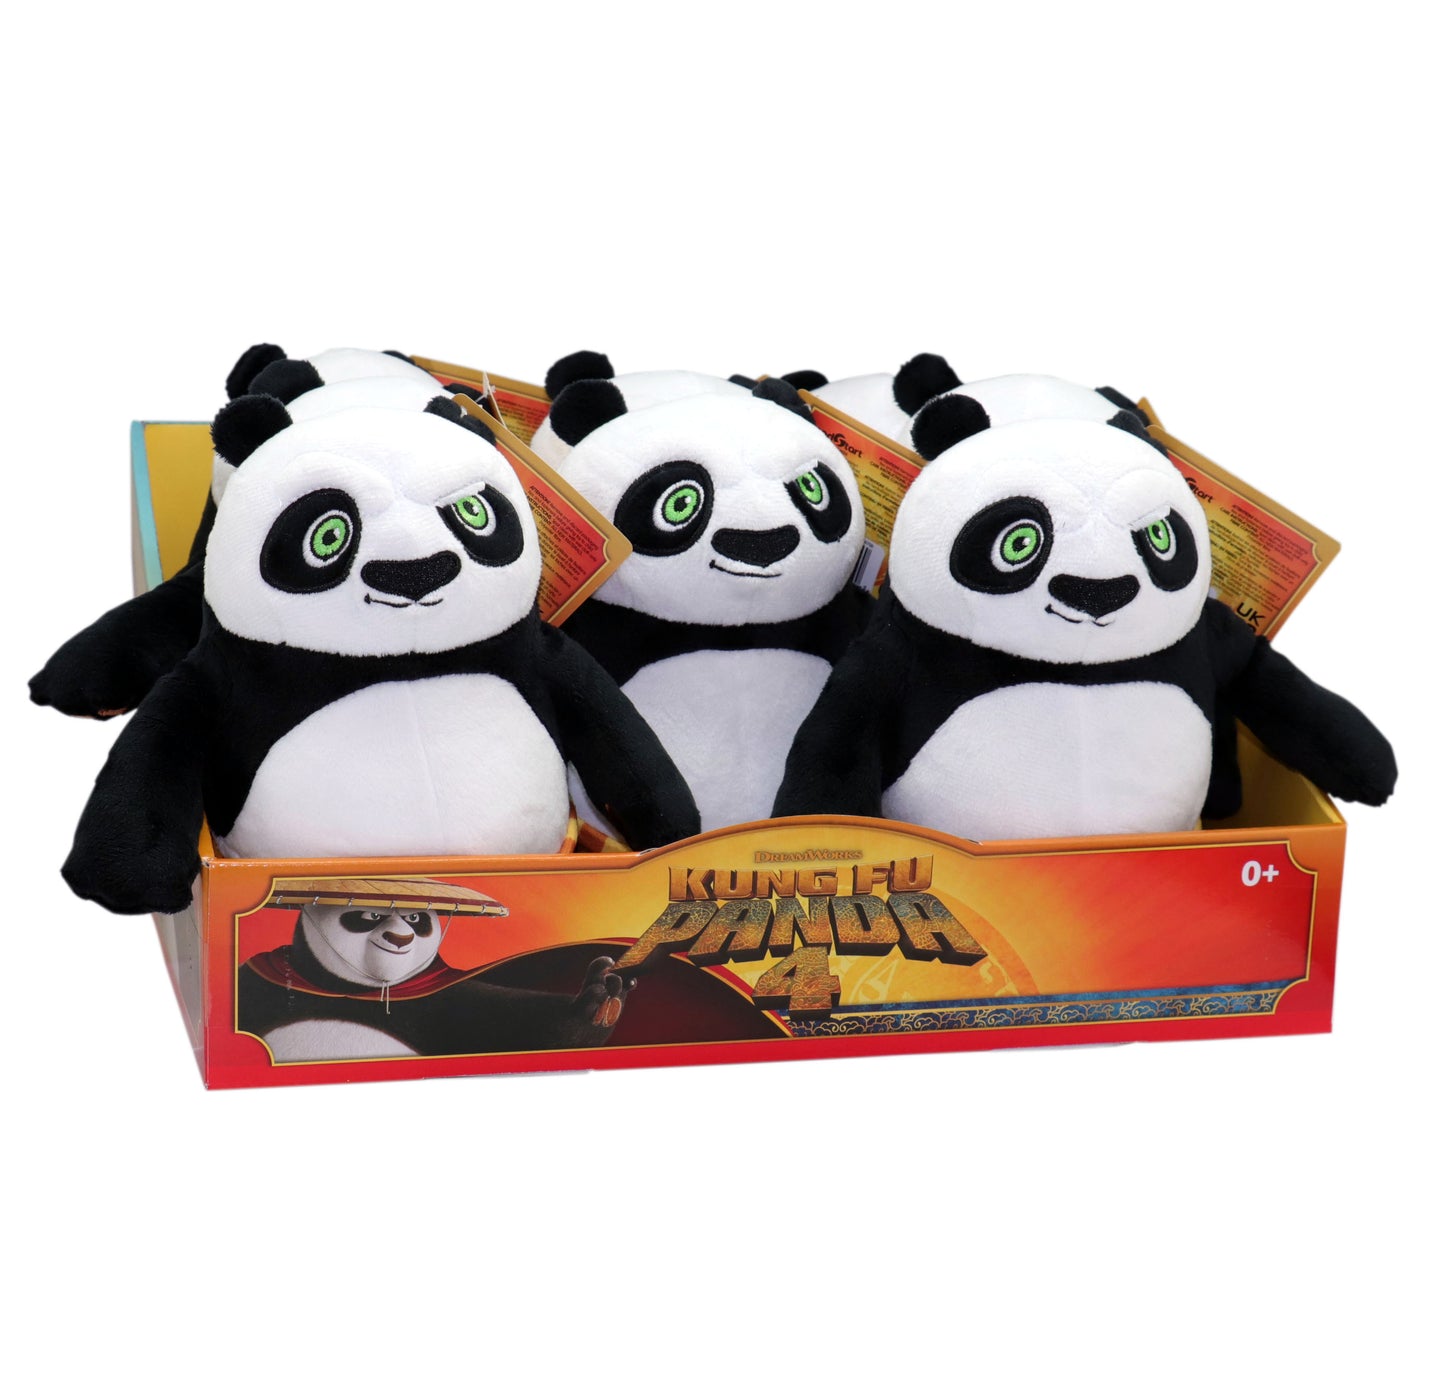 Peluche Kung fu panda asst